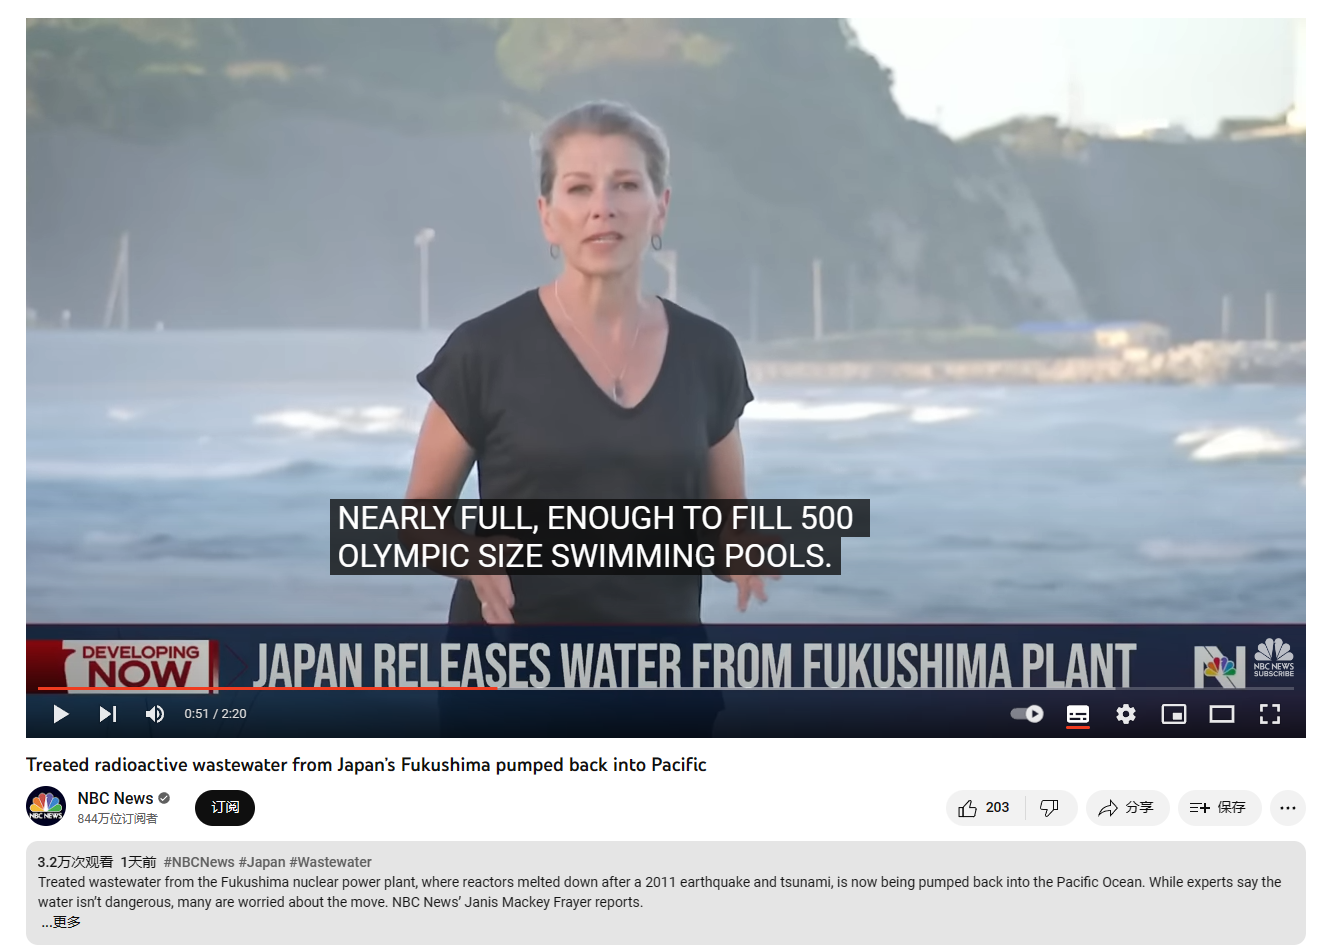 从《浅析日本核废水排海讨论中的常见话术》看作者的立场问题